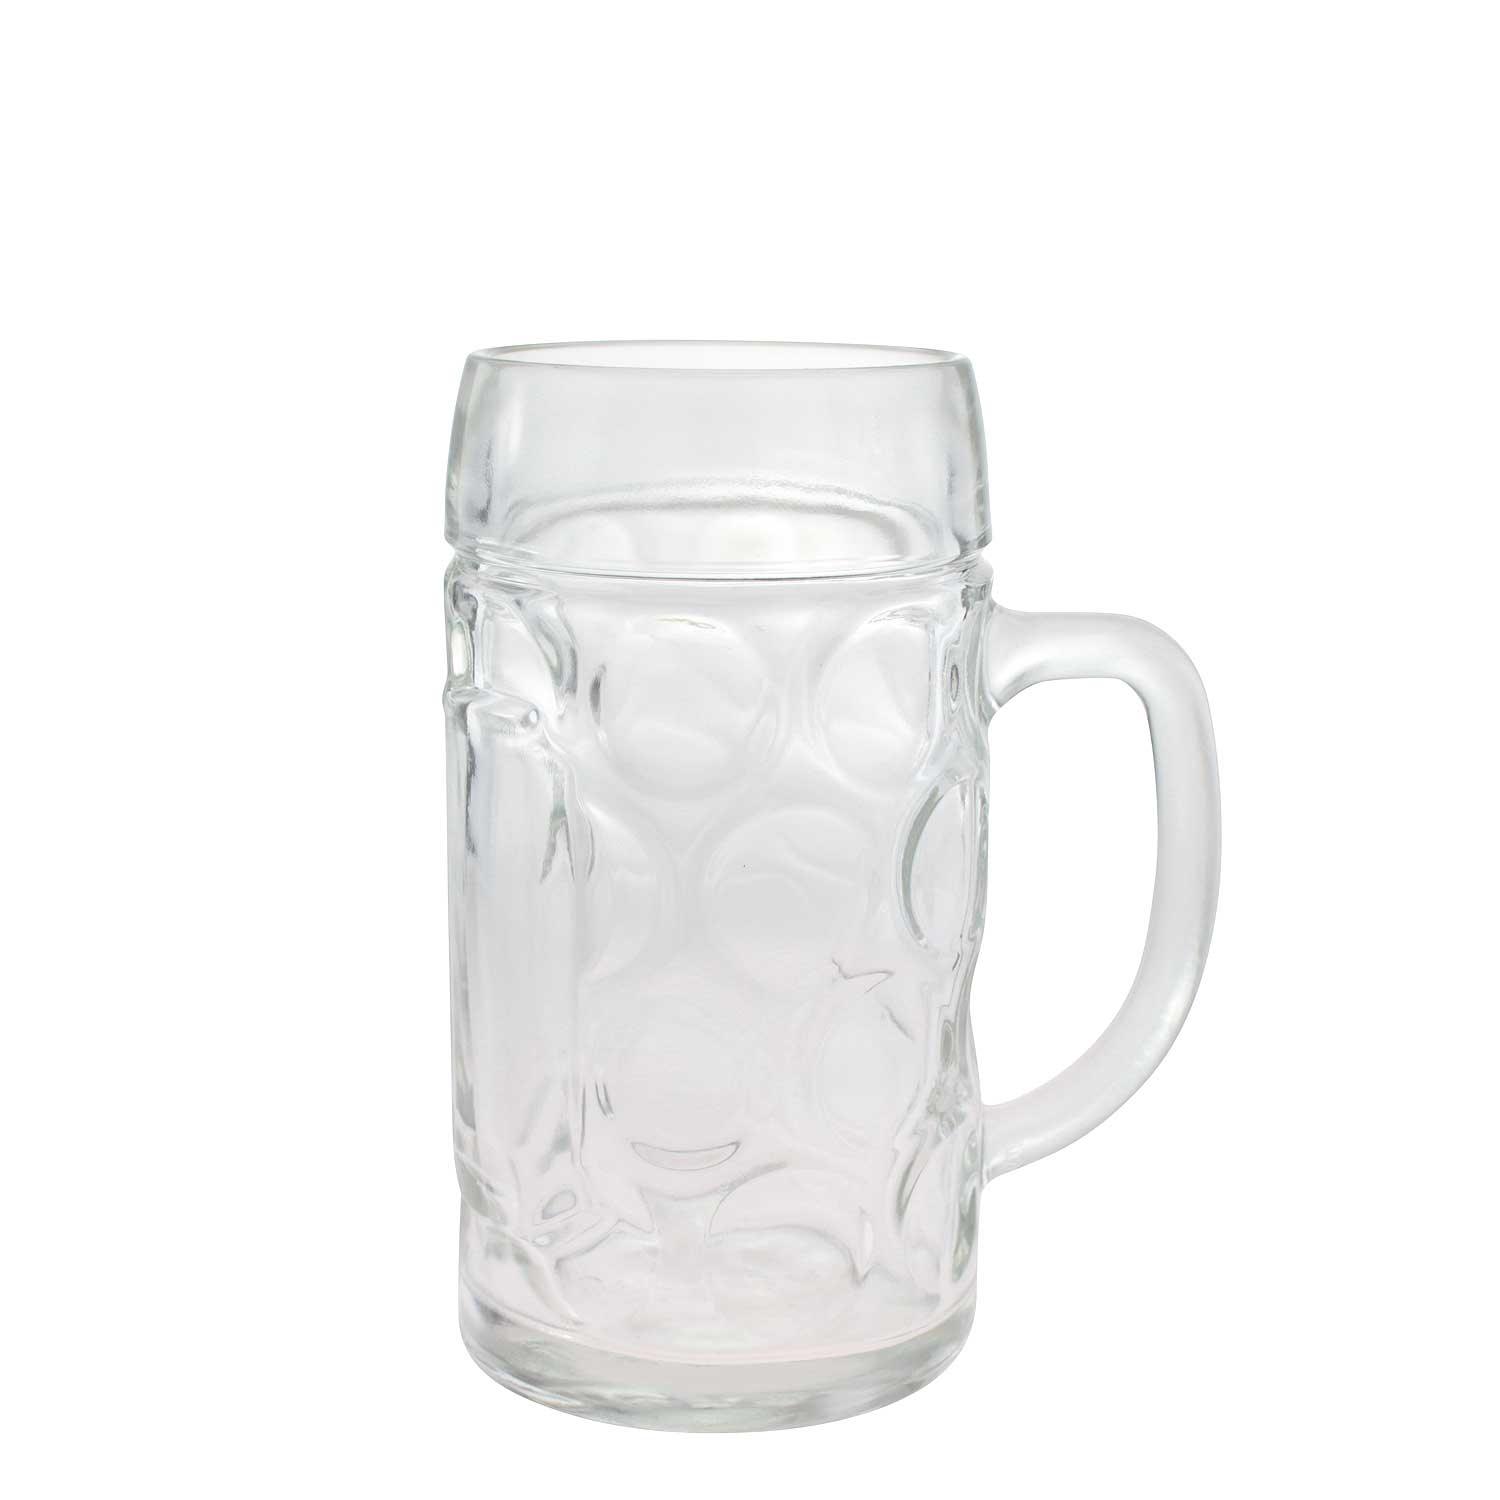 Glas Maßkrug mit Logodruck - bavariashop - mei LebensGfui